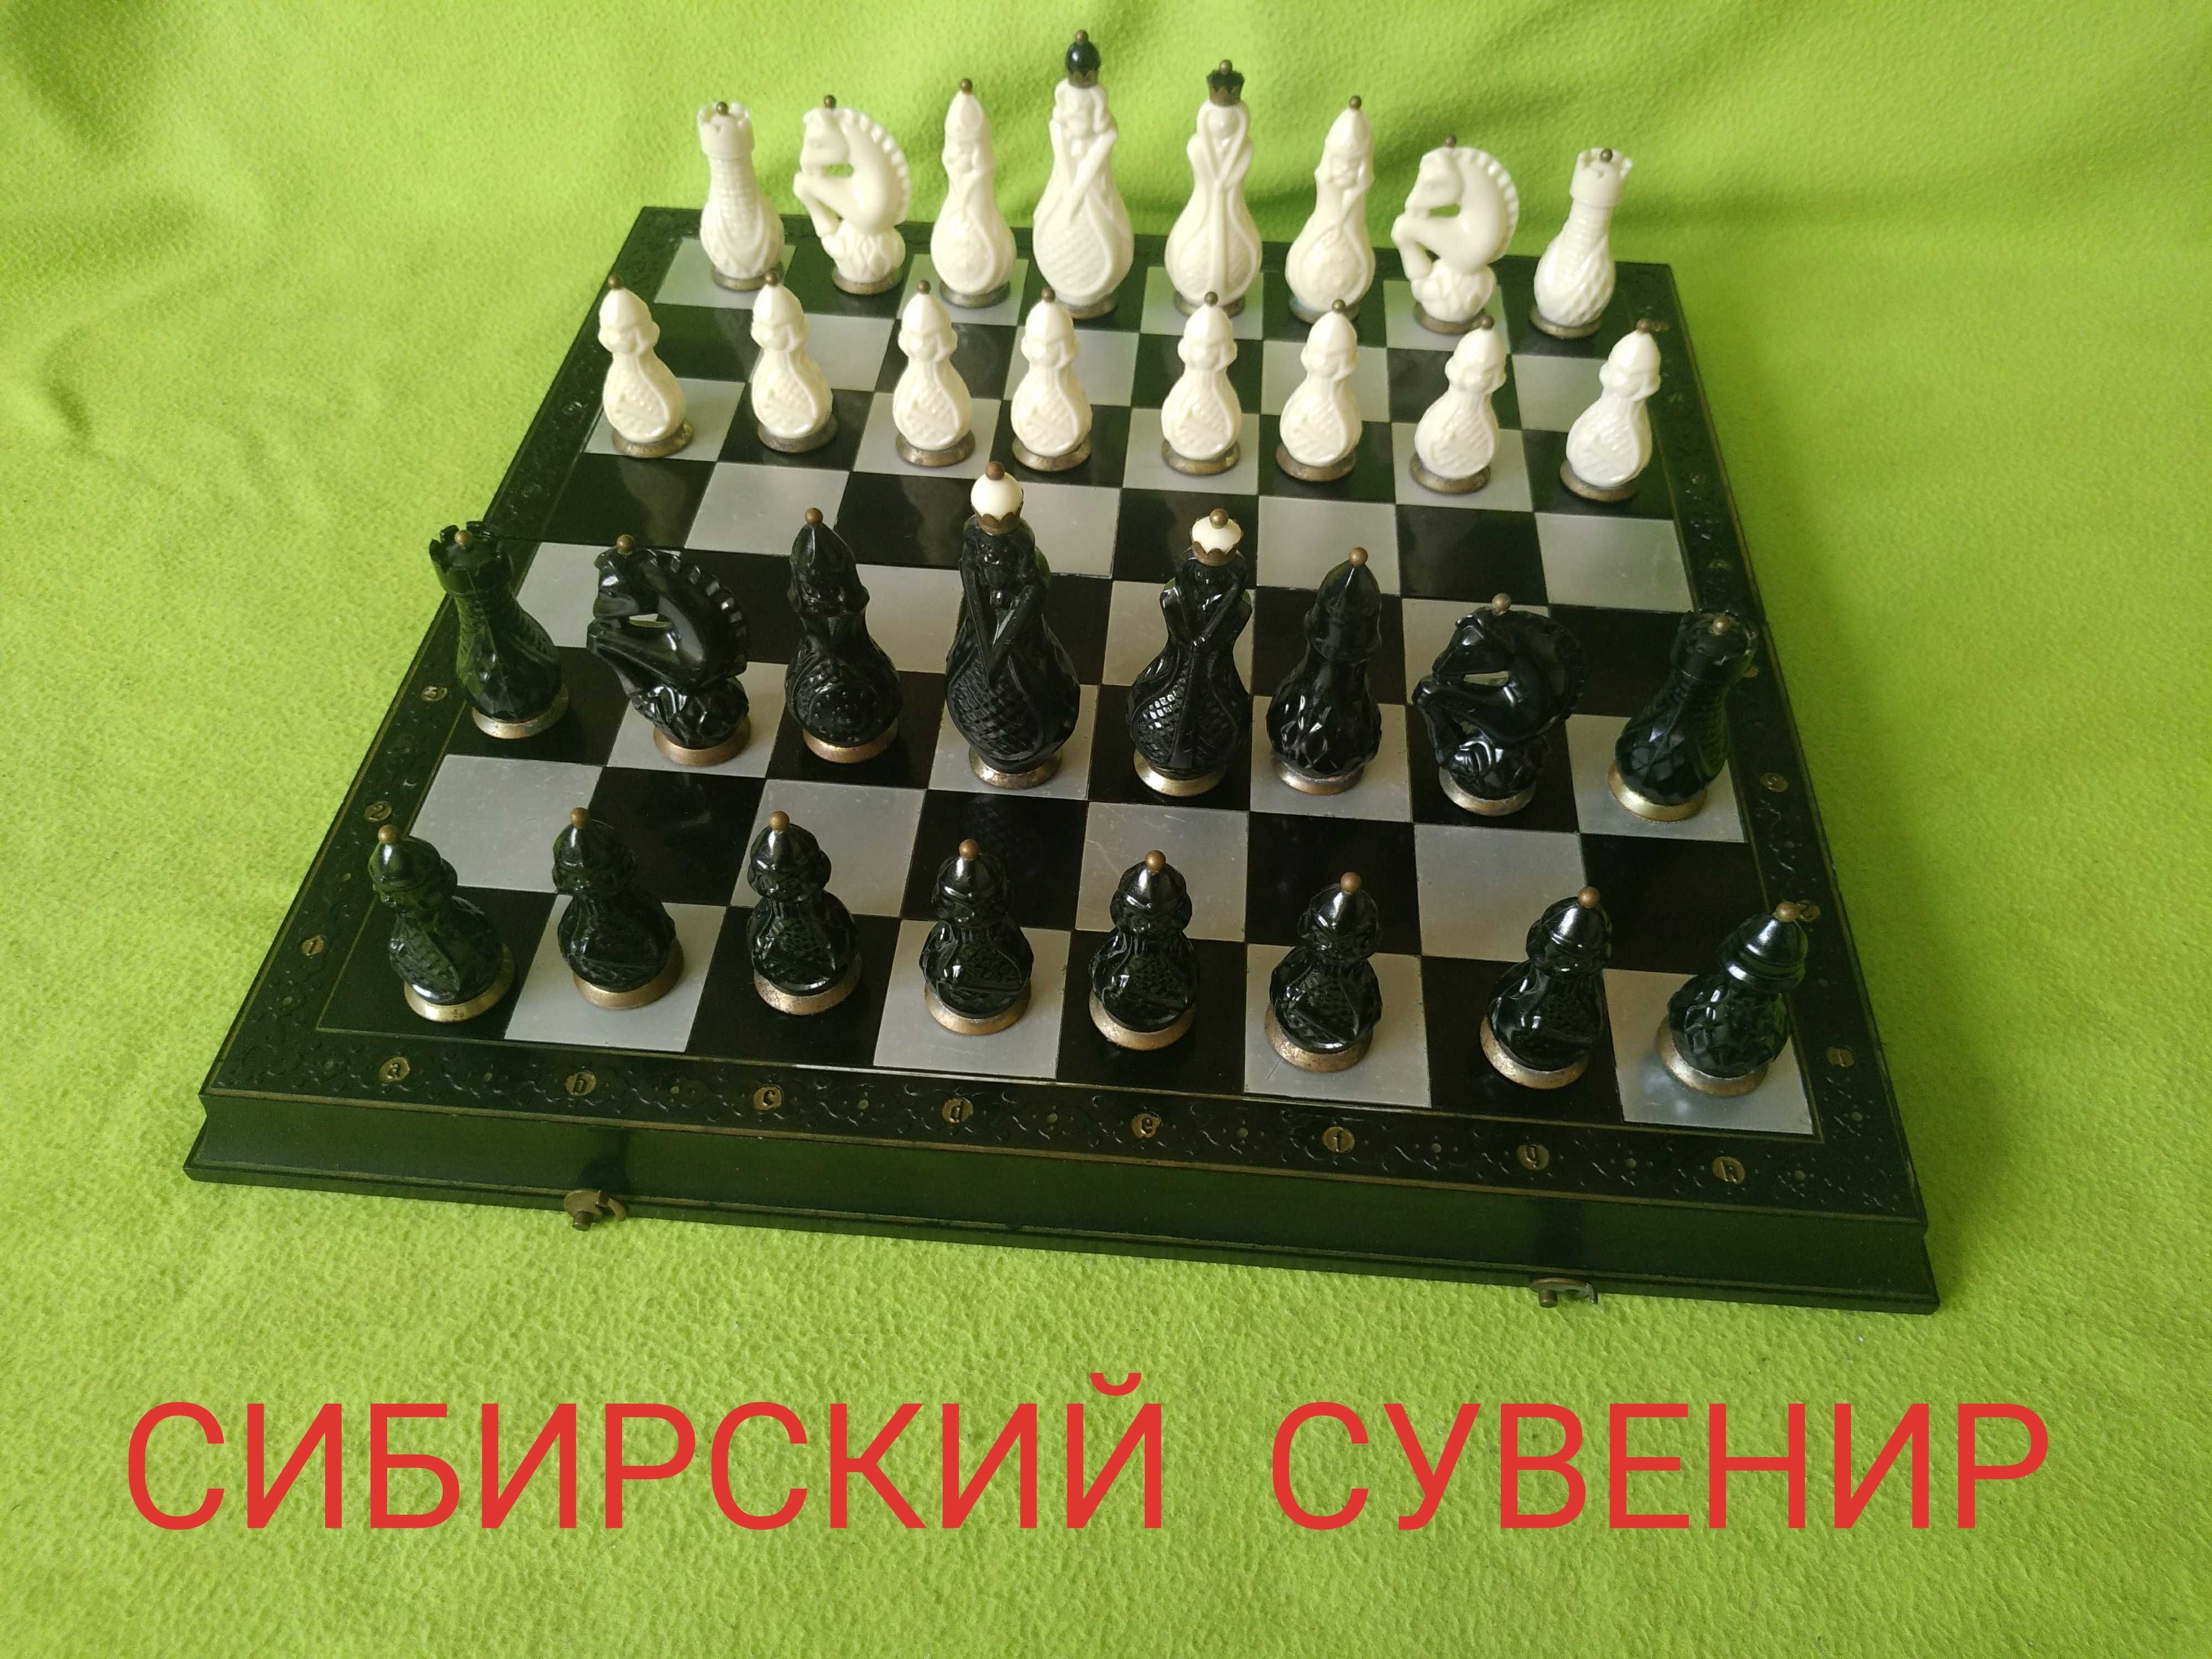 Шахматы СИБИРСКИЙ СУВЕНИР - выпускались в ссср - РЕДКИЕ!